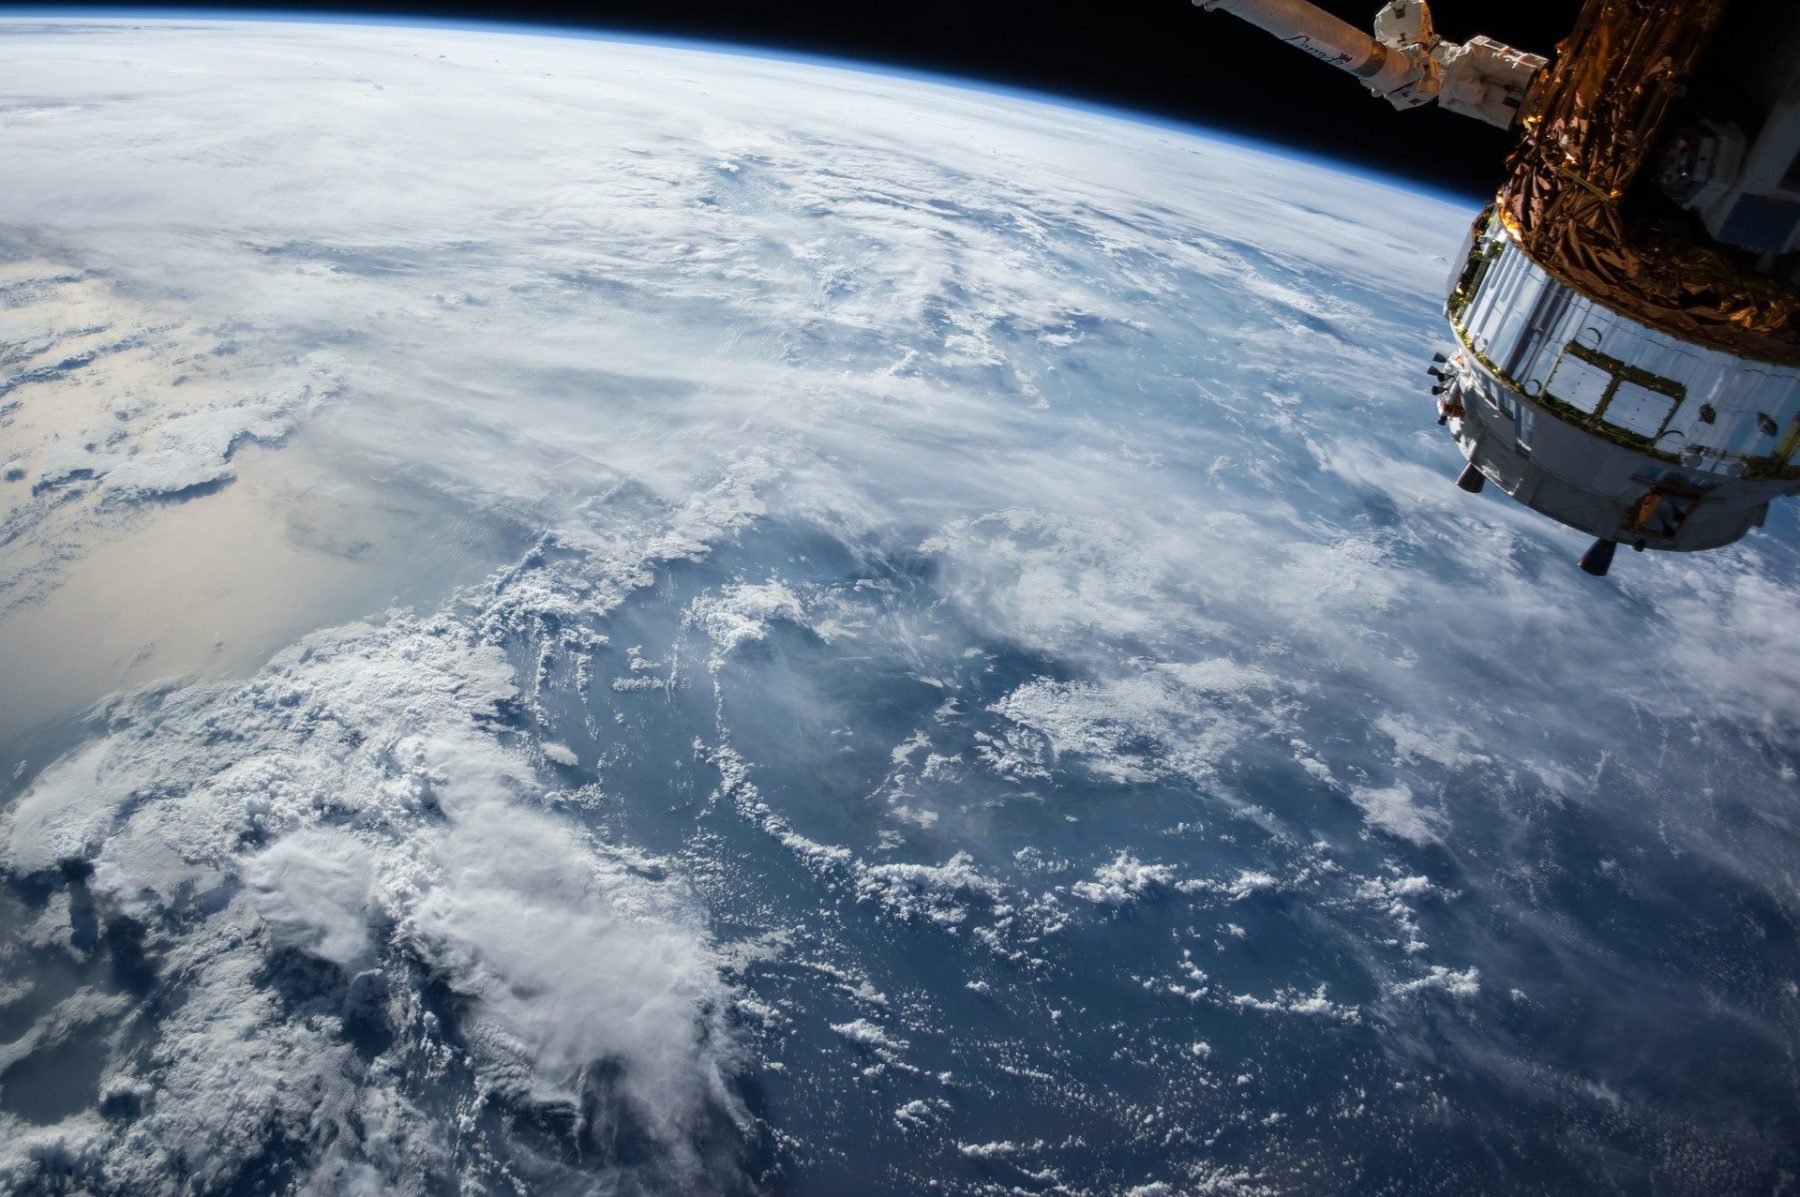 Αστροναύτες υγεία: Έρευνα για την ενίσχυση της υγείας των αστροναυτών για μελλοντικές διαστημικές αποστολές